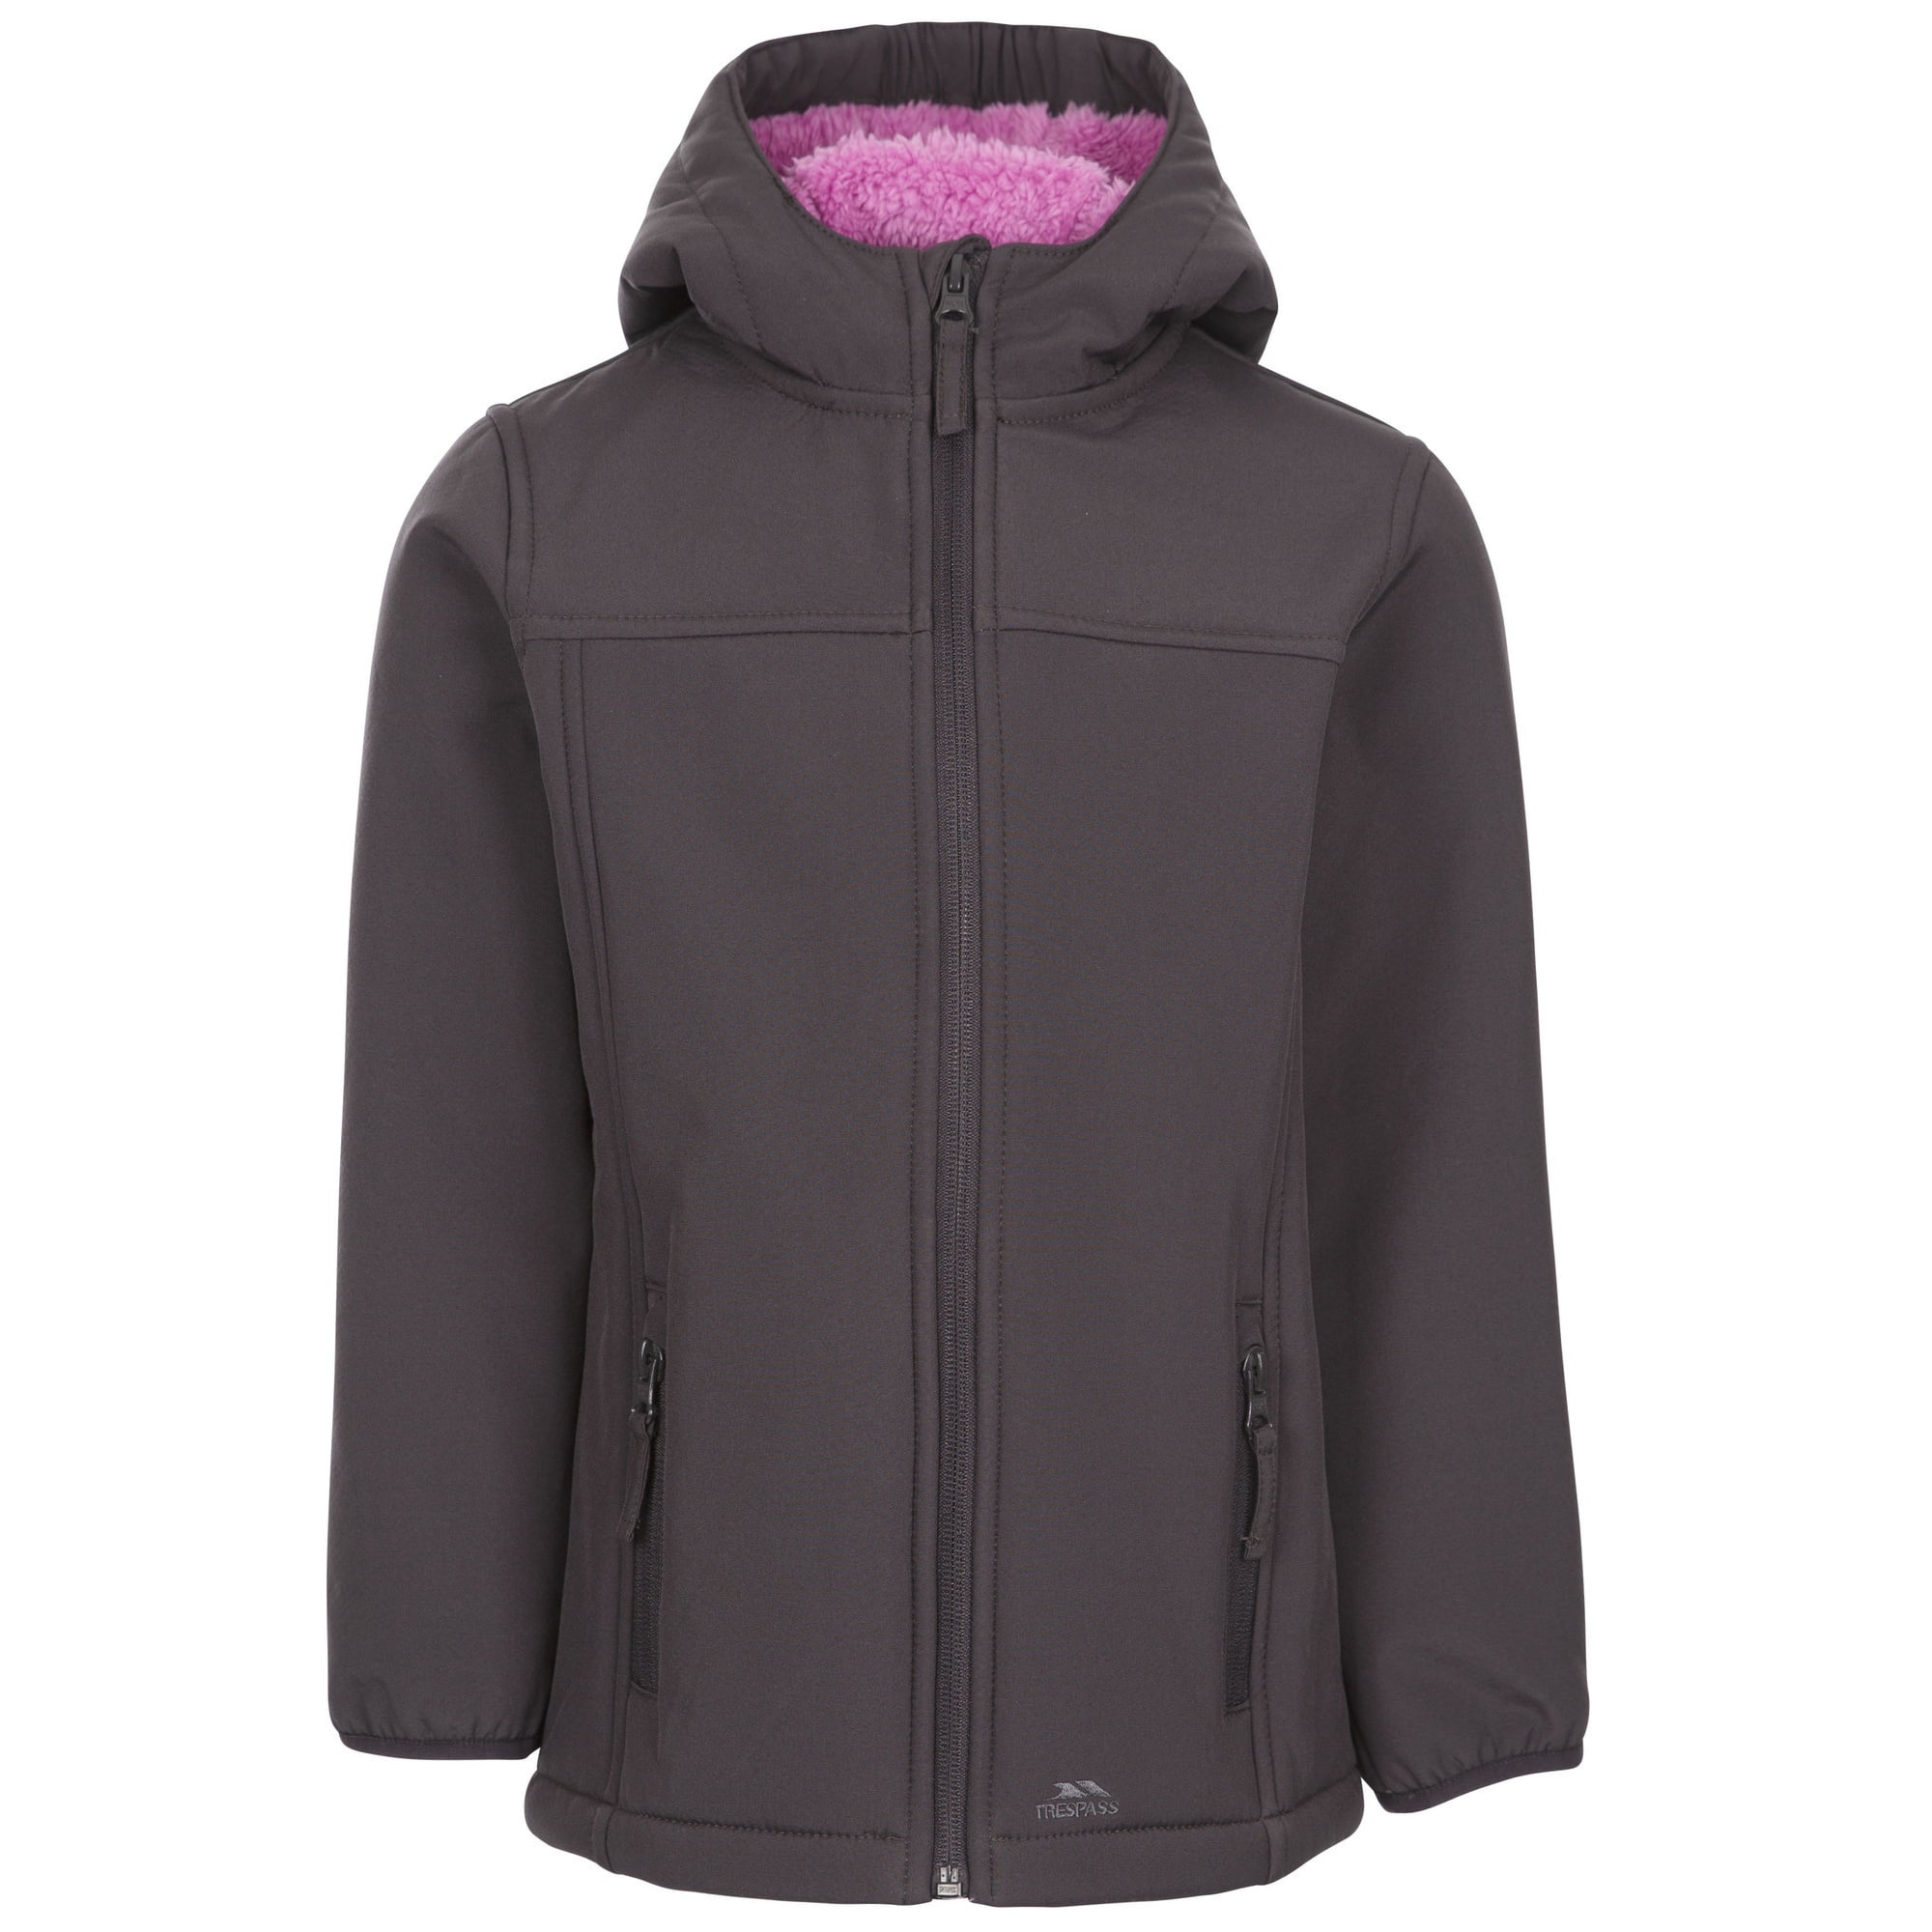 CMP Girls Melange Softshell Jacket With Climaprotect Wp 7,000 Technology Shell Jacket 